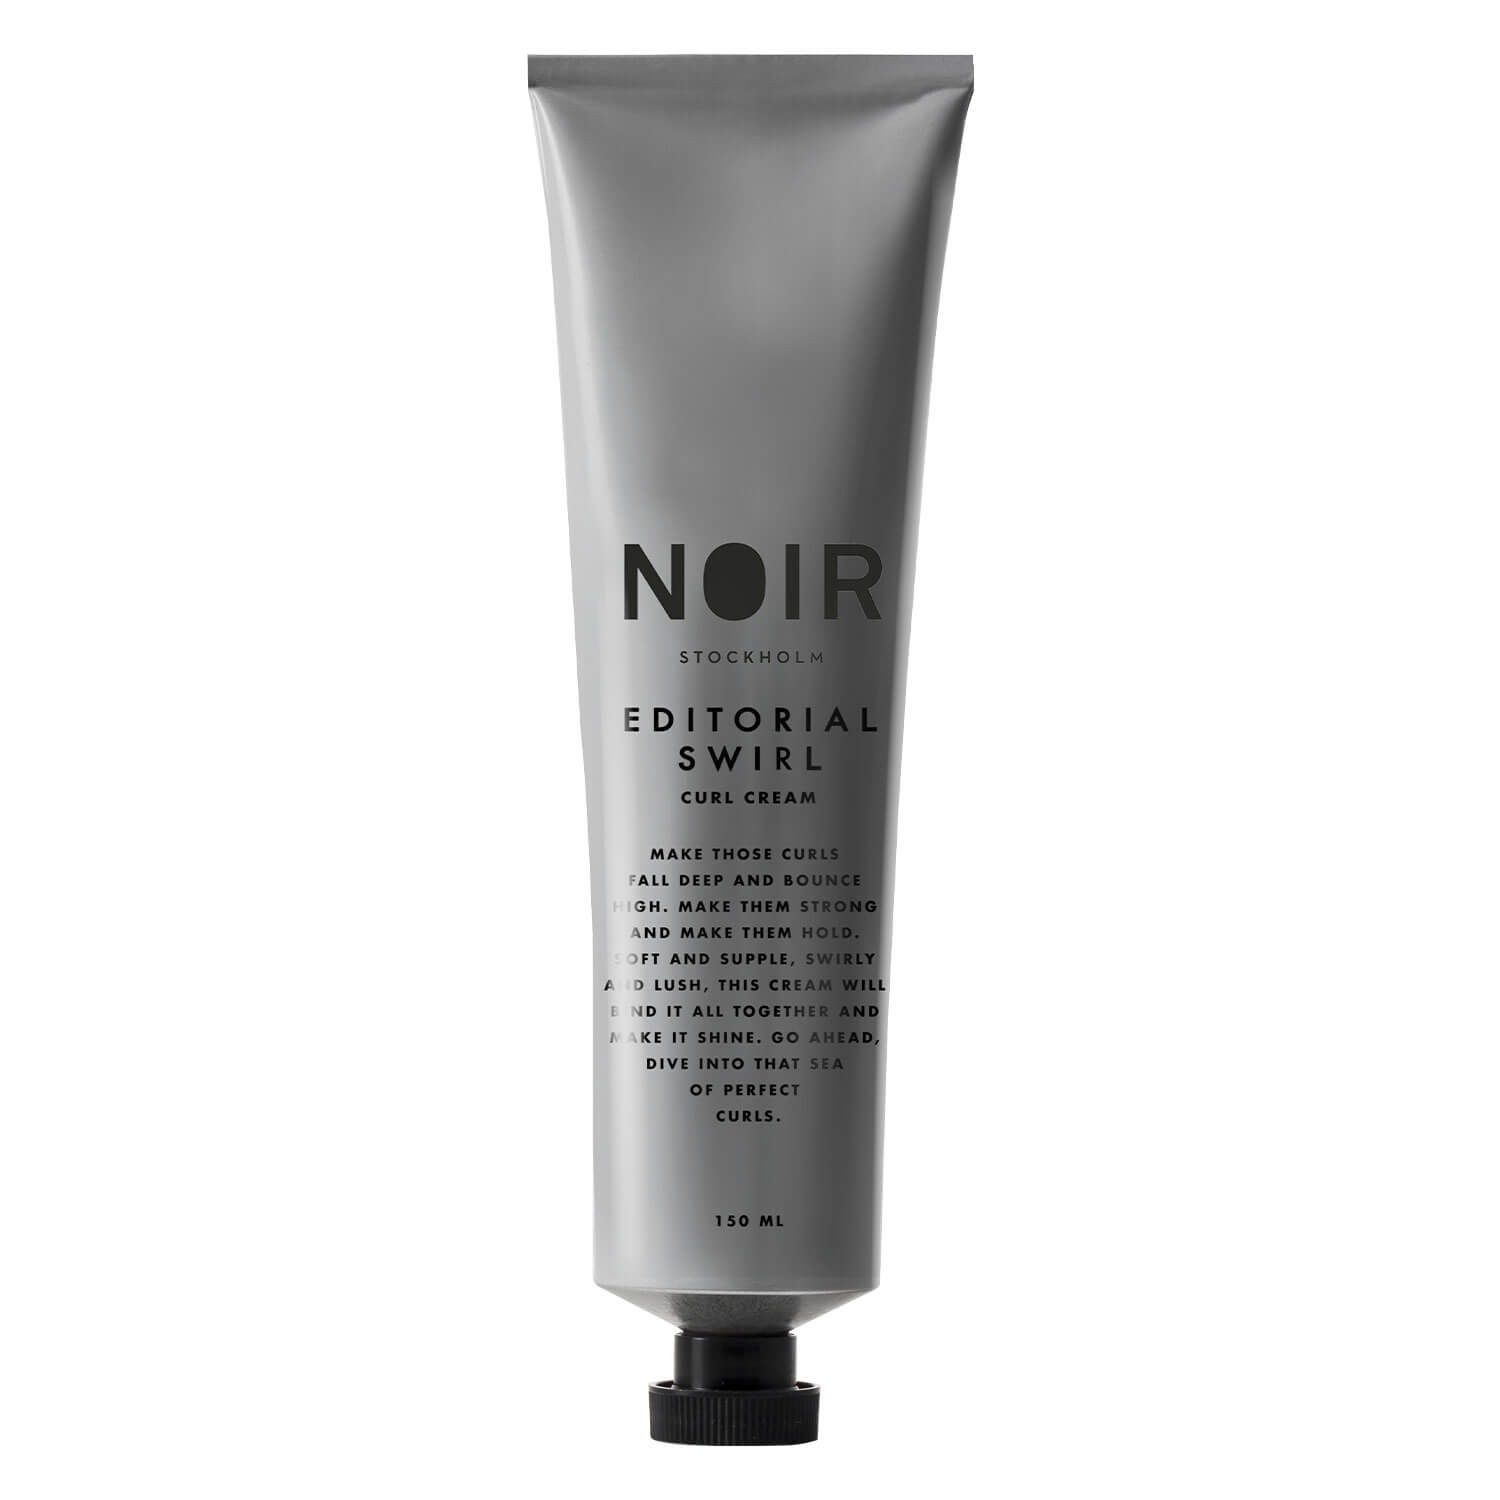 Produktbild von NOIR - Editorial Swirl Curl Cream